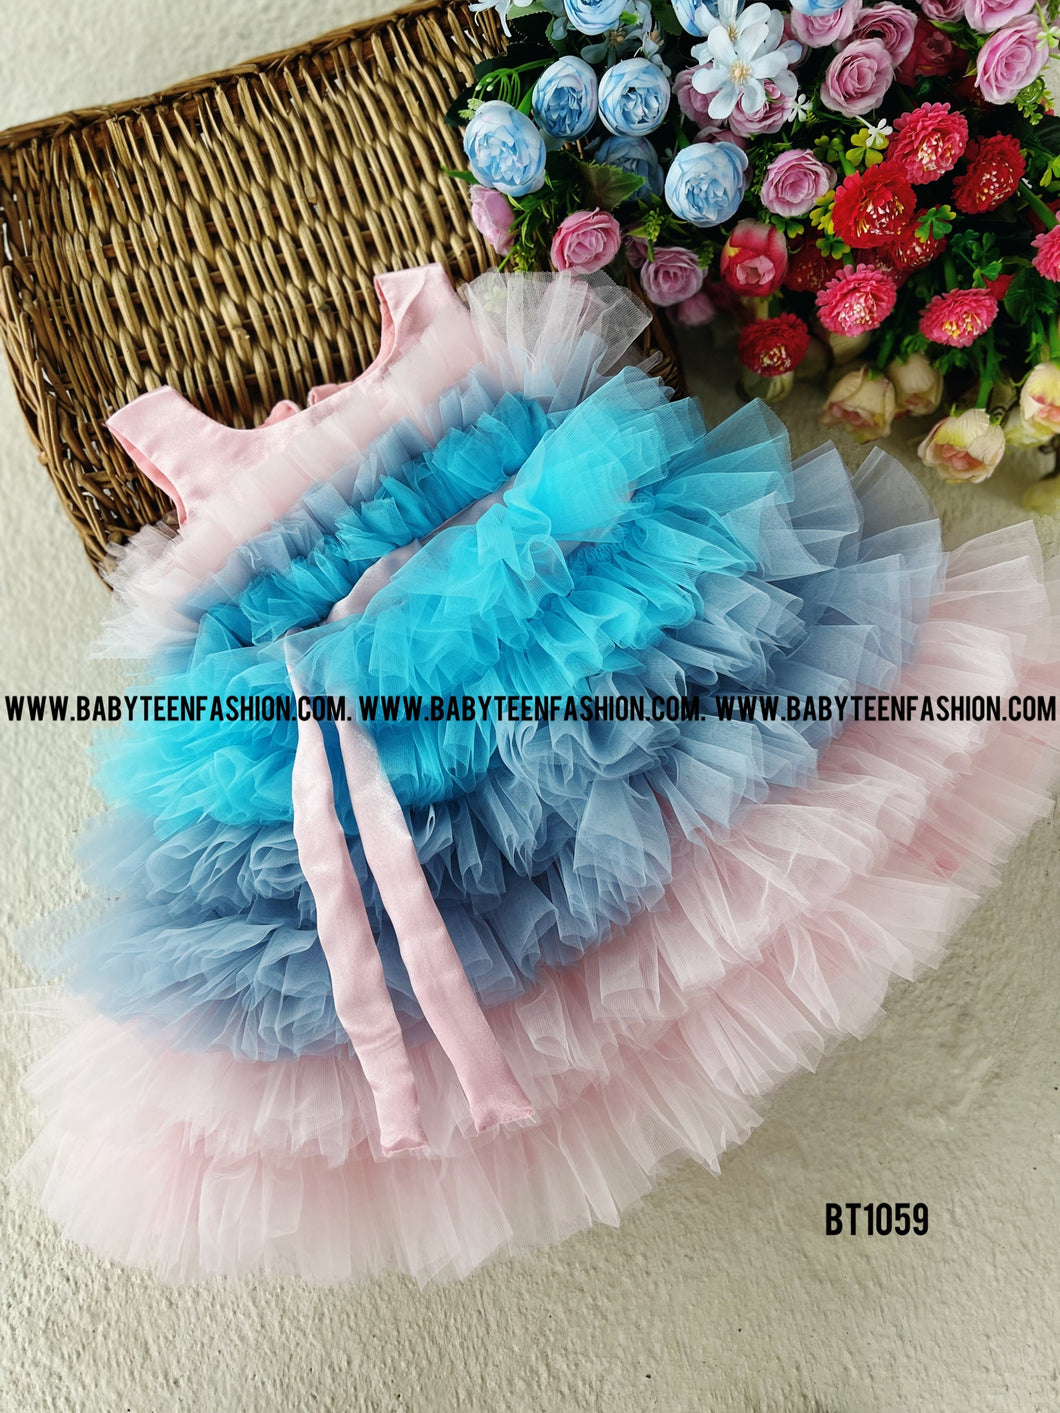 BT1059 Cotton Candy Cloud Dress - Dreamy Pastel Poise